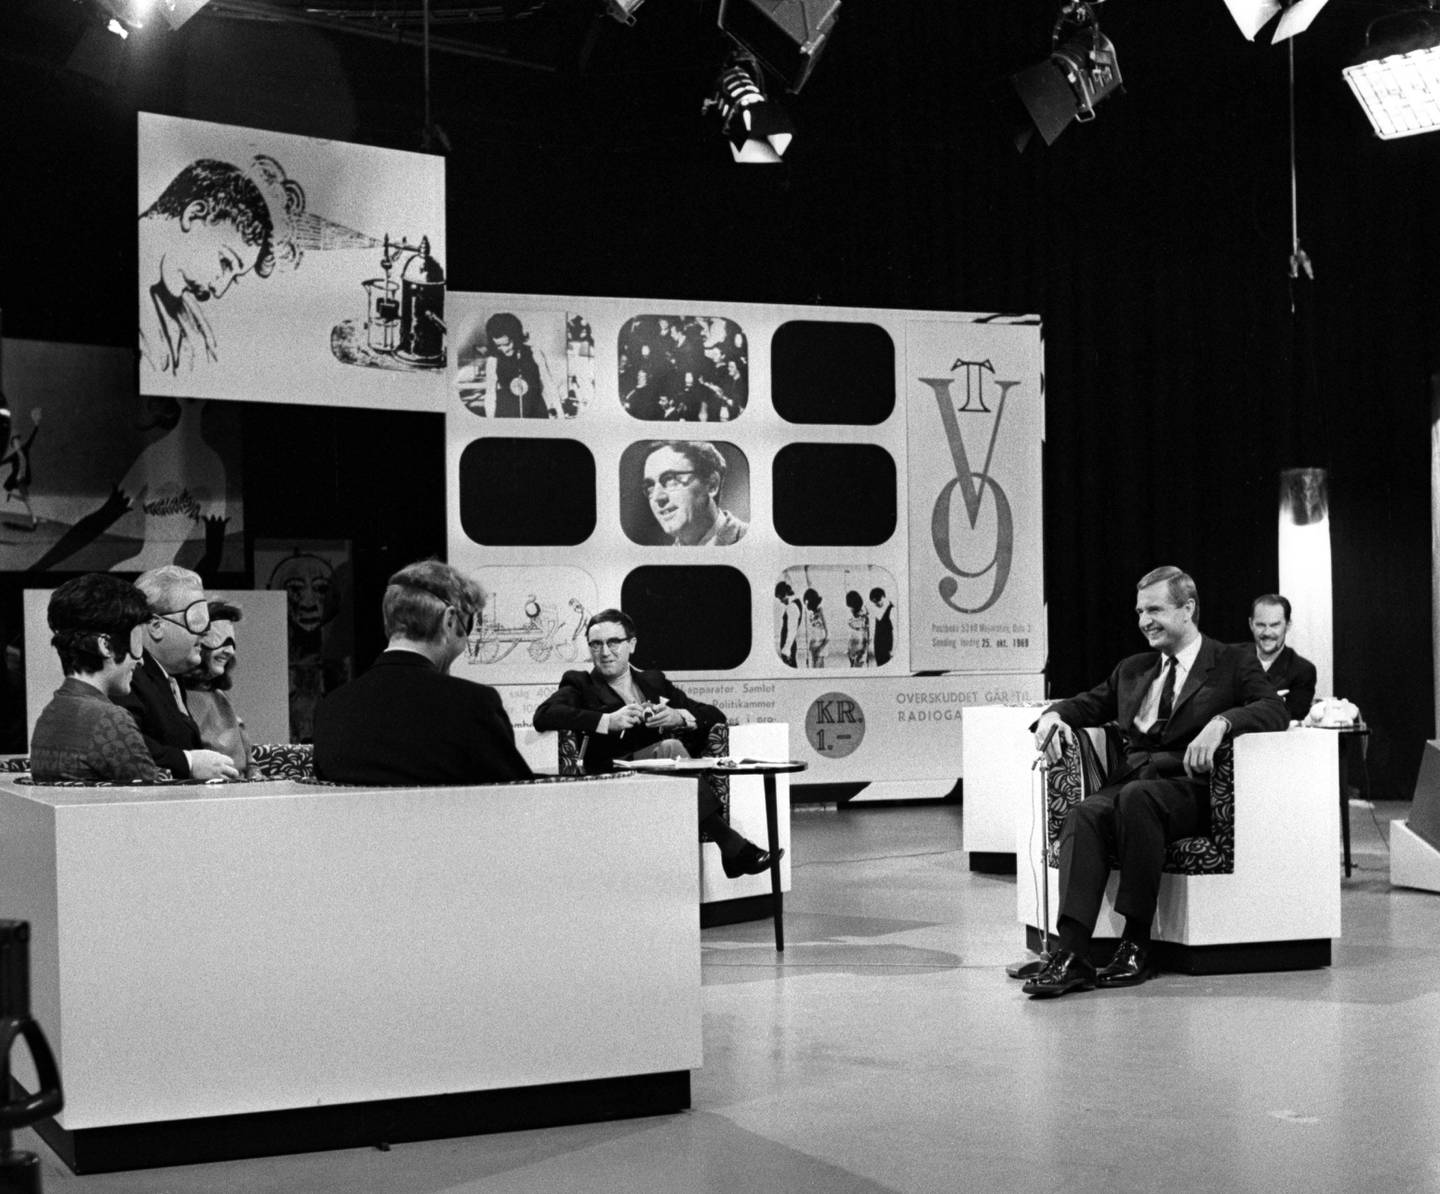 OSLO Oktober 1969 NRK har full klaff med sitt siste lørdags-show "TV9", en slags fjernsyns-bingo der seerne kunne kjøpe bingo-kuponger og vinne TV-apparater. Inntekten gikk til Radiogavefondet. 
Her skal et maskert panel, bestående av bl.a. Willie Hoel og Anne Cath. Vestly gjette på en hemmelig person, i dette tilfellet Erik Tandberg. Programleder Ragnar Baartvedt midt i bildet med Bingo-brettet i bakgrunnen. Erik Diesen th i bildet. 
Foto: Aaserud / Aktuell / Scanpix